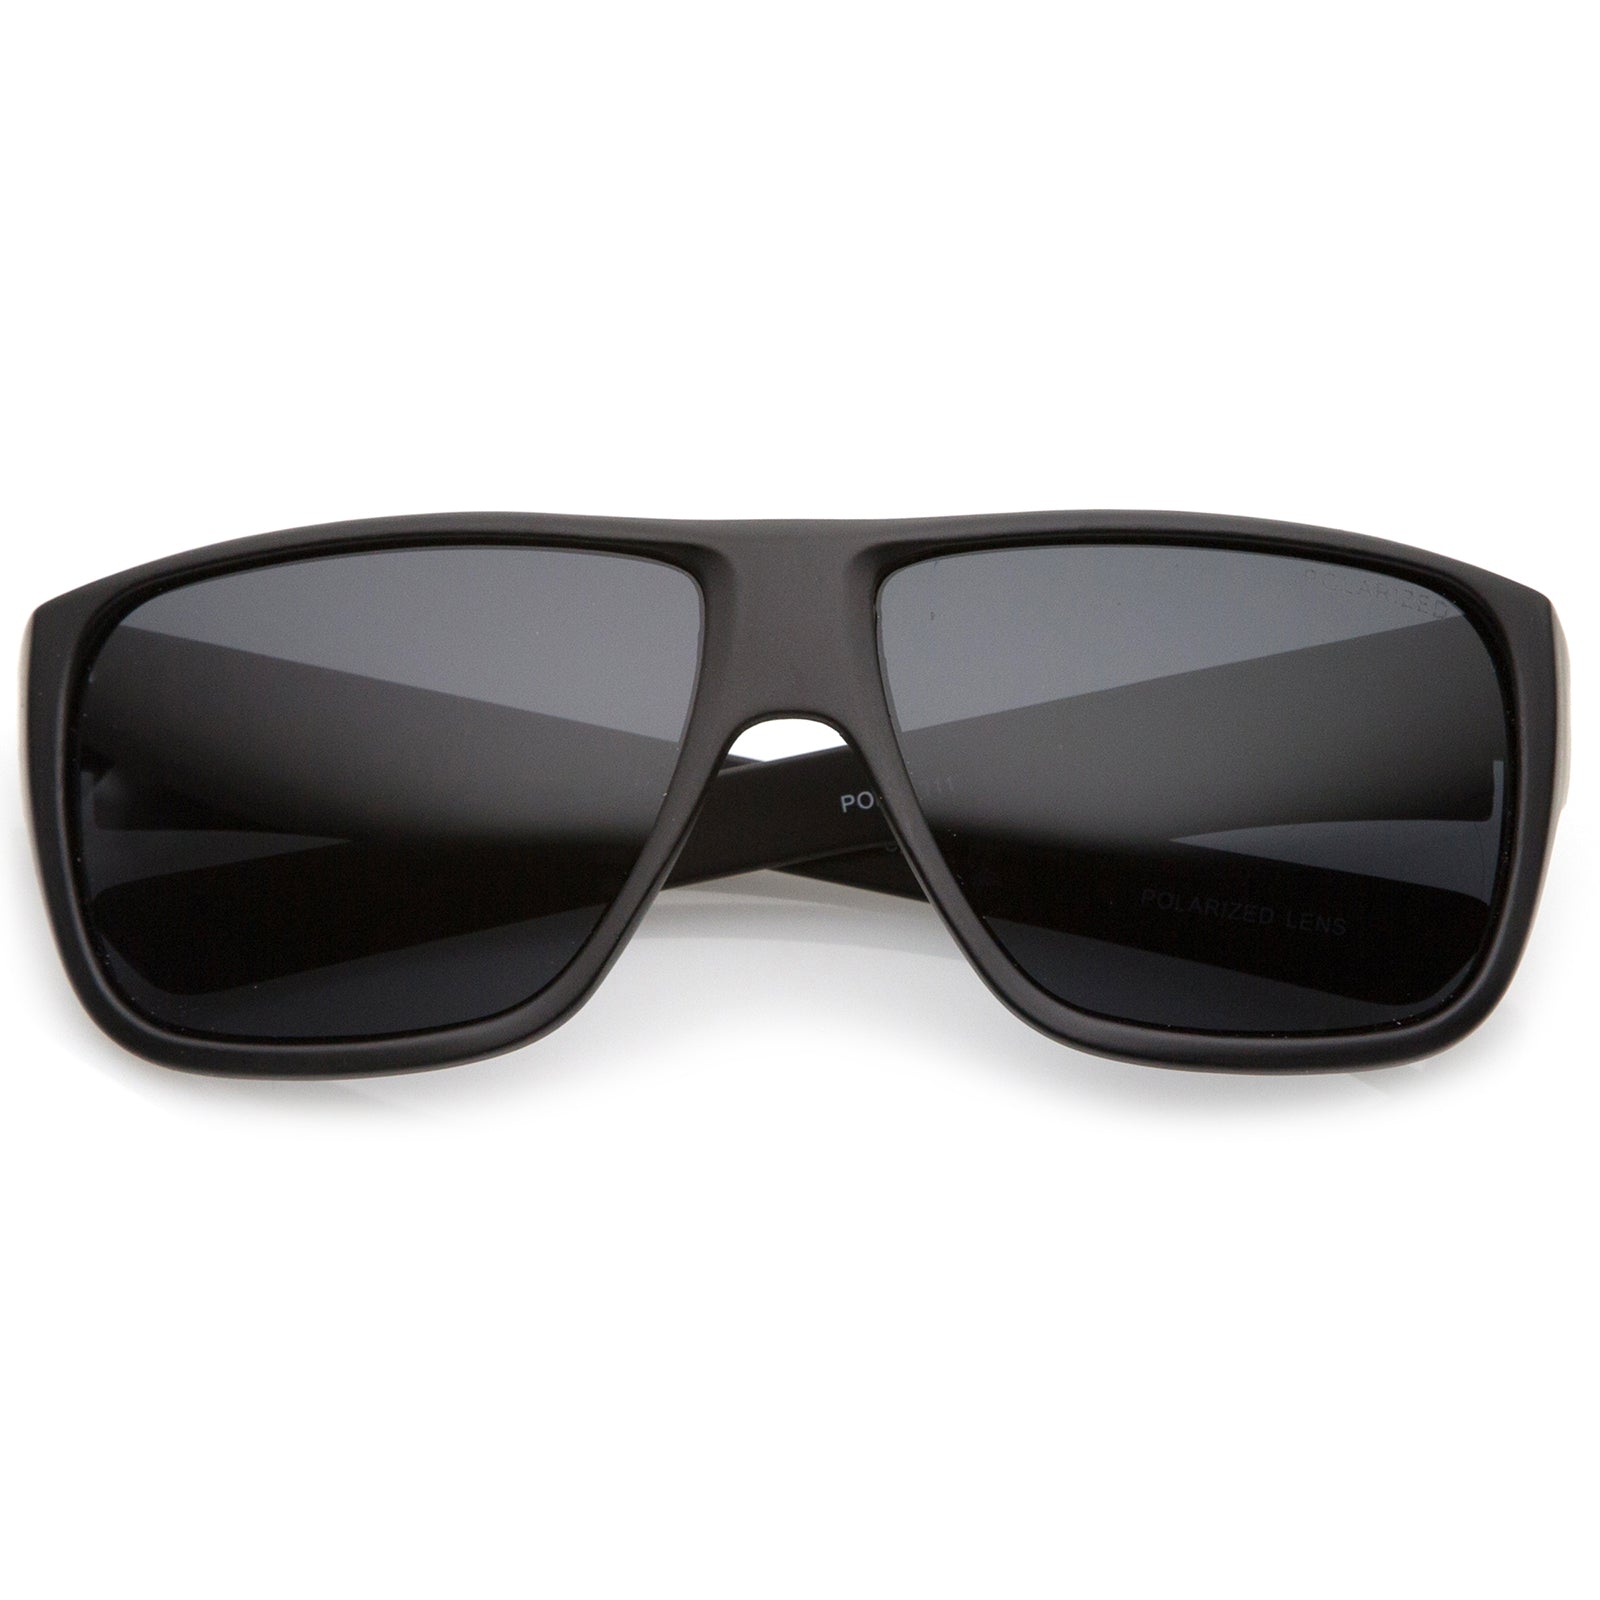 Buy Eymen I Over-sized, Rectangular, Retro Square Sunglasses Black For Men  & Women Online @ Best Prices in India | Flipkart.com